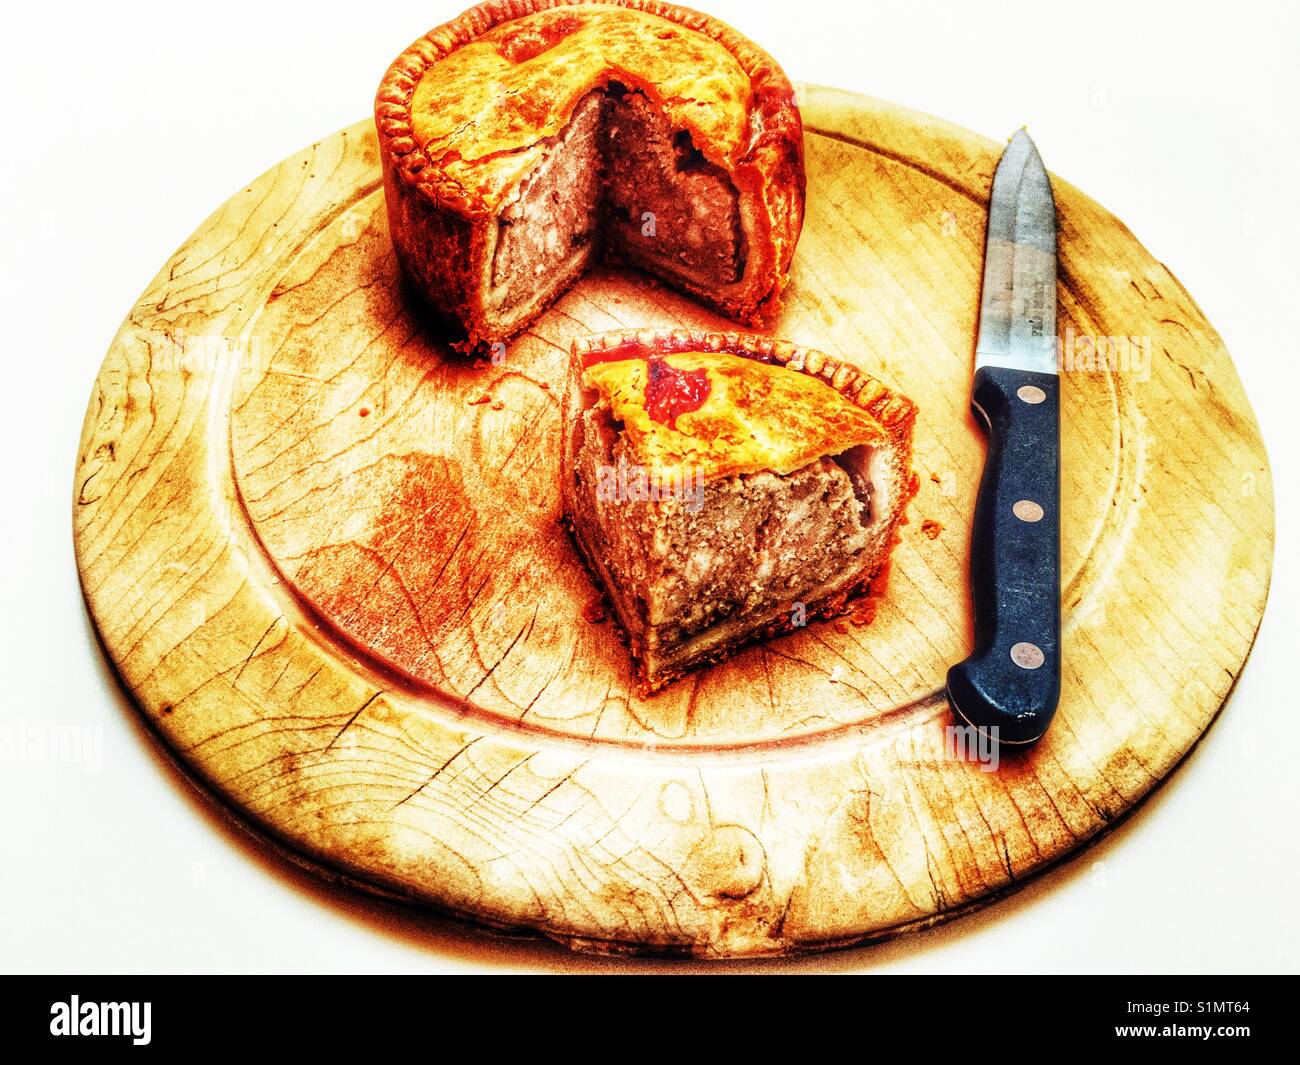 Waitrose Melton Mowbray pork pie Stock Photo